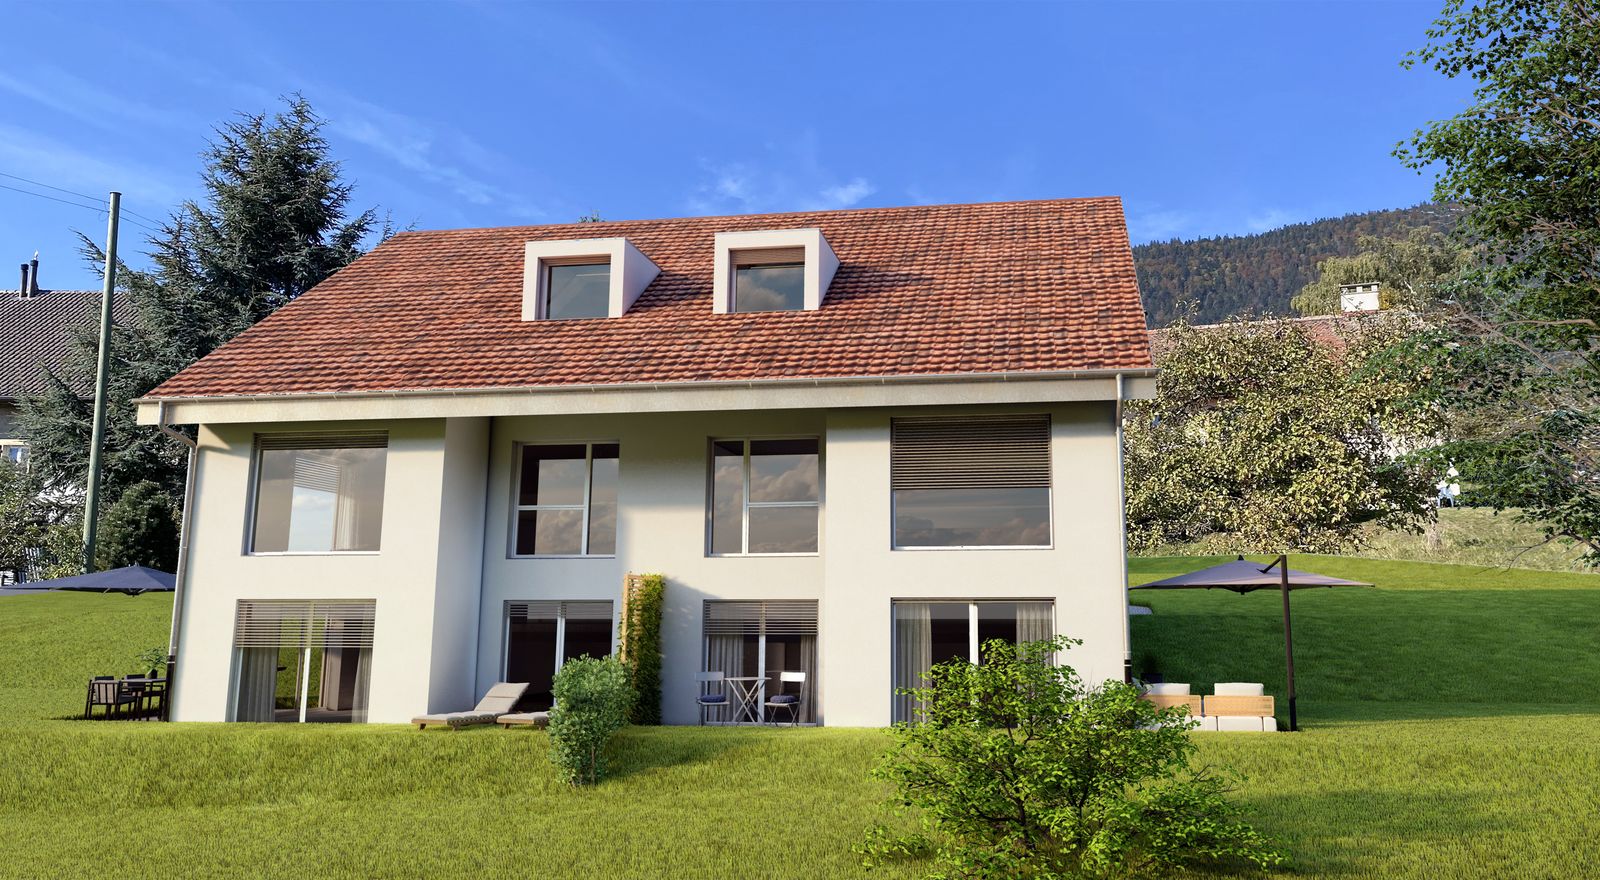 Projet immobilier à Provence avec 2 maisons à vendre, vue de face